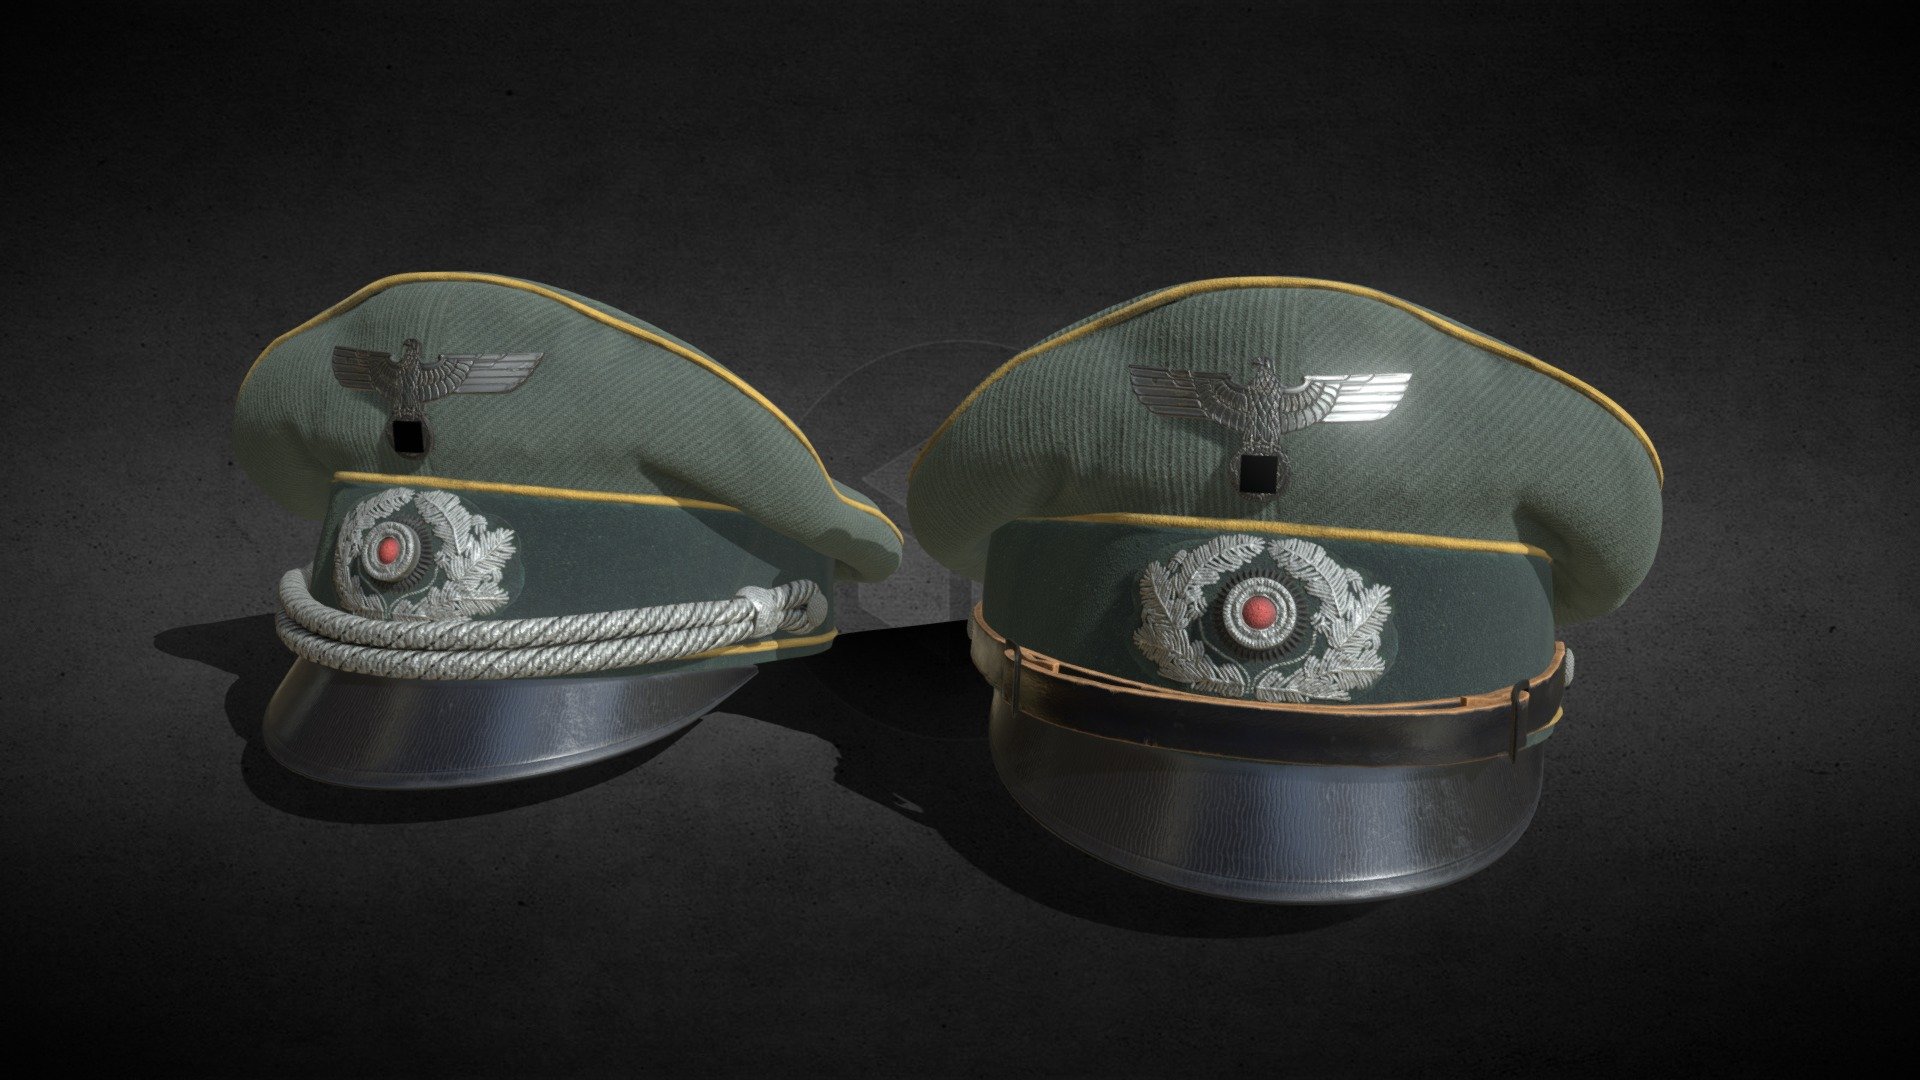 german officer cap - 3D model by leo kerjean (@leo.kerjean) 3d model